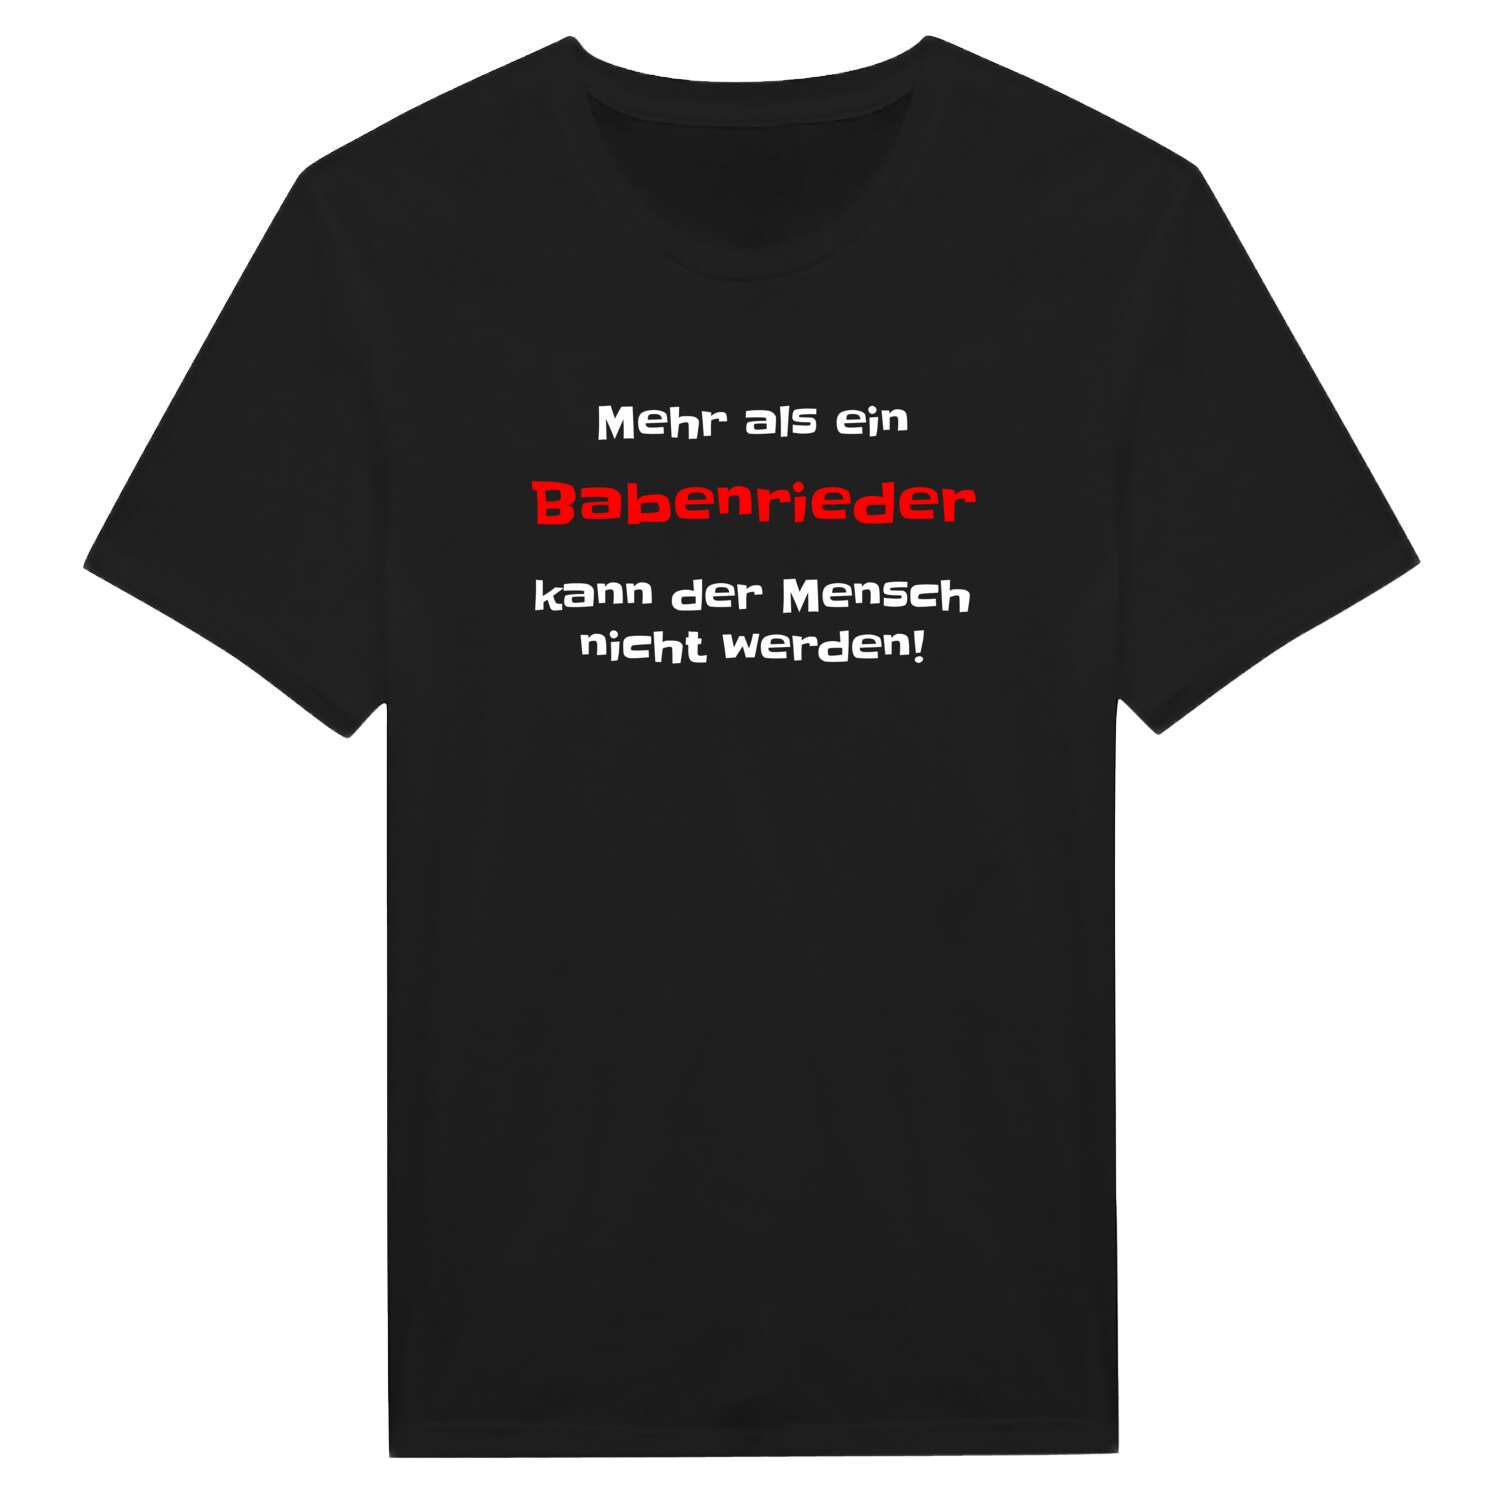 Babenried T-Shirt »Mehr als ein«